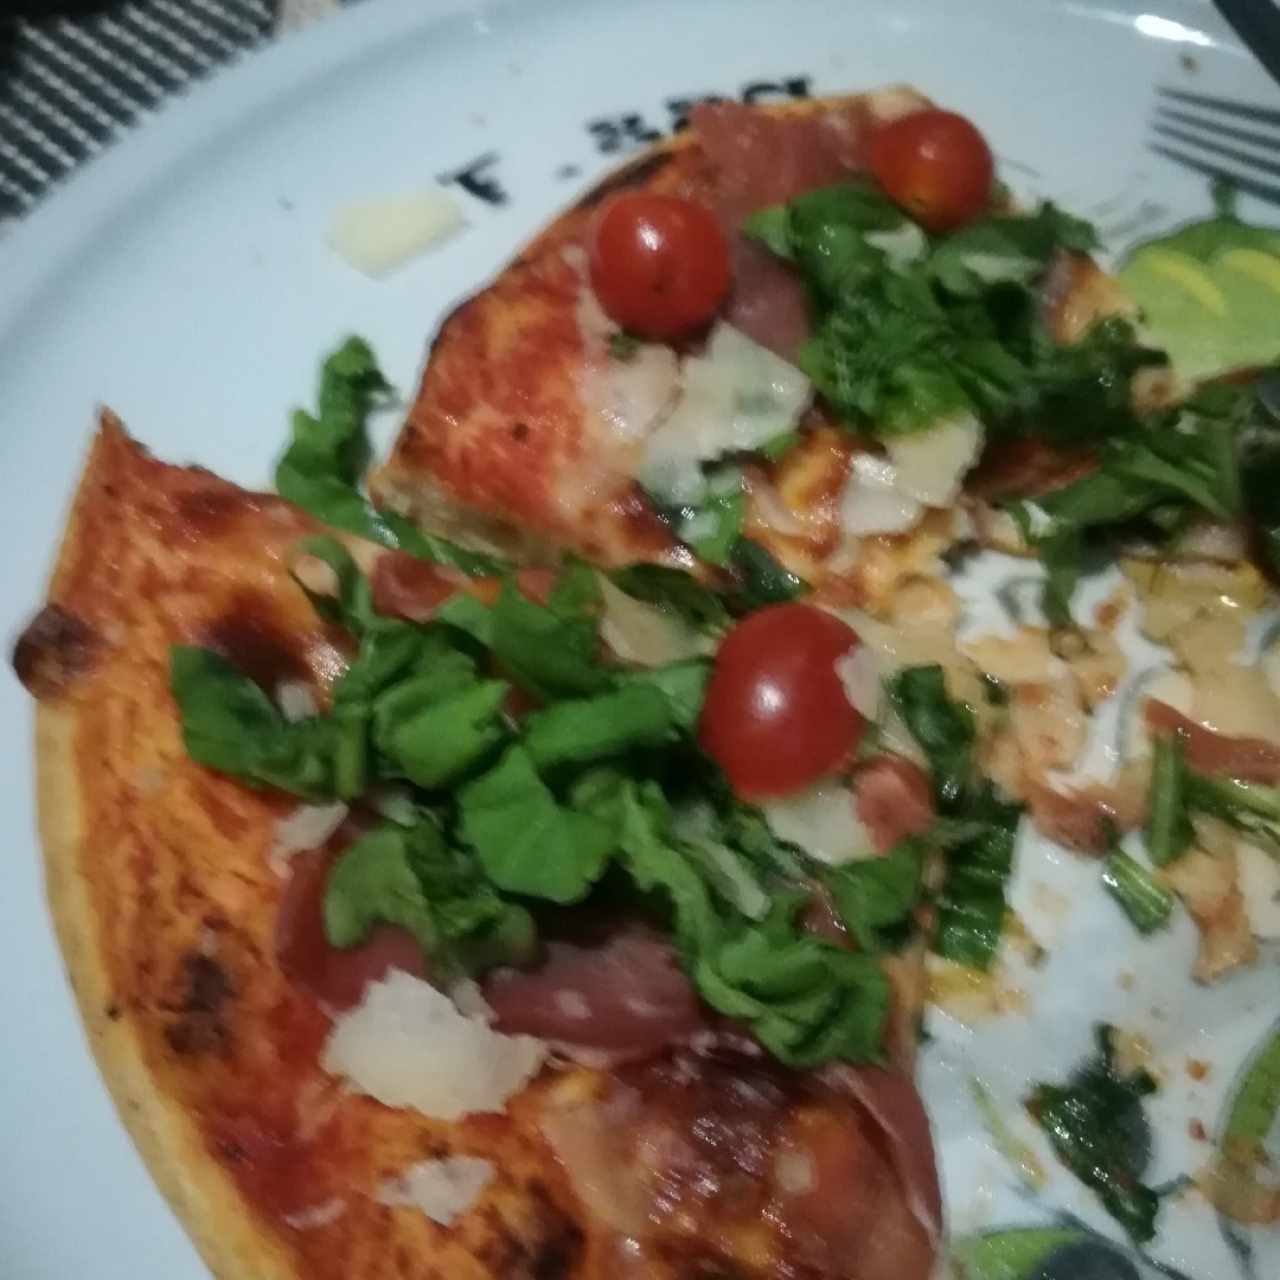 pizza de rucula 